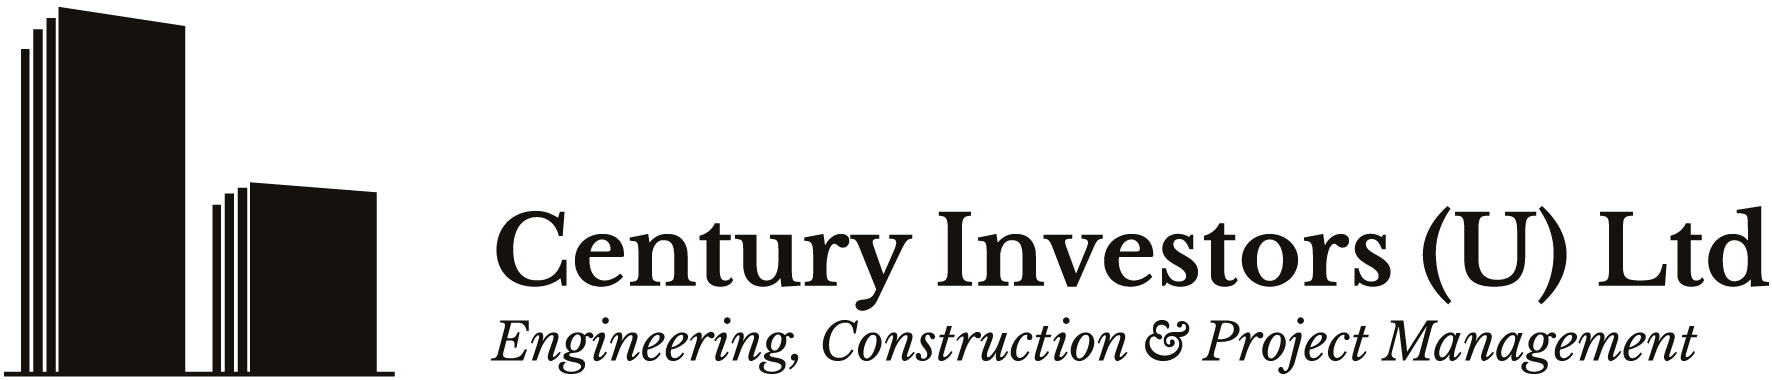 Century Investors (U) Ltd